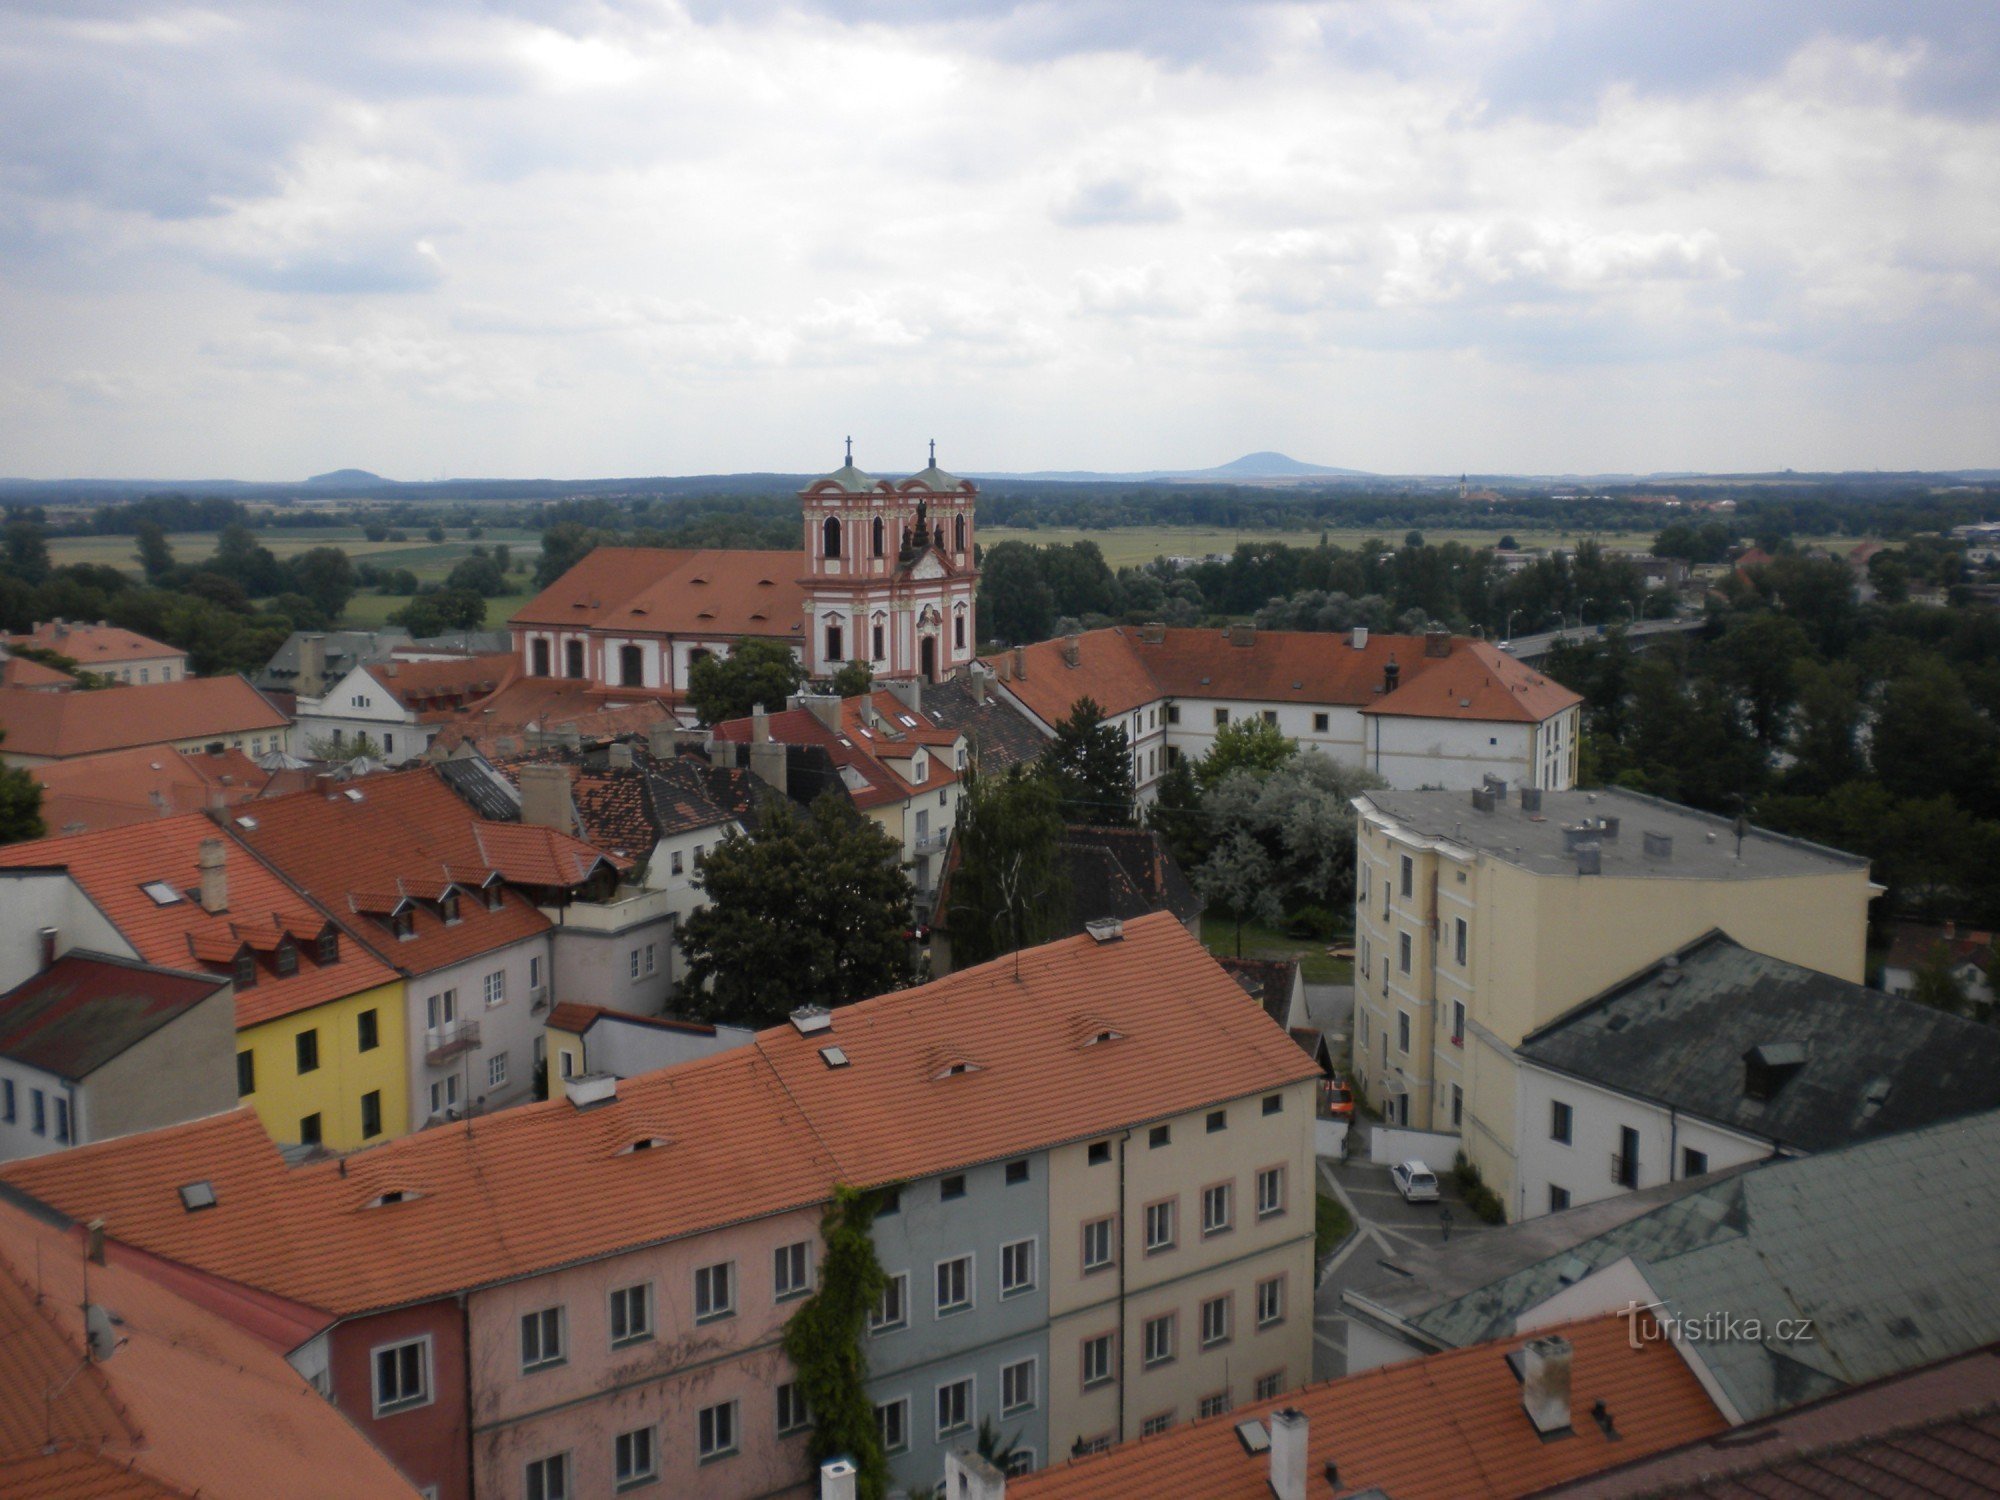 Ιστορικά κτίρια της πόλης Litoměřice.